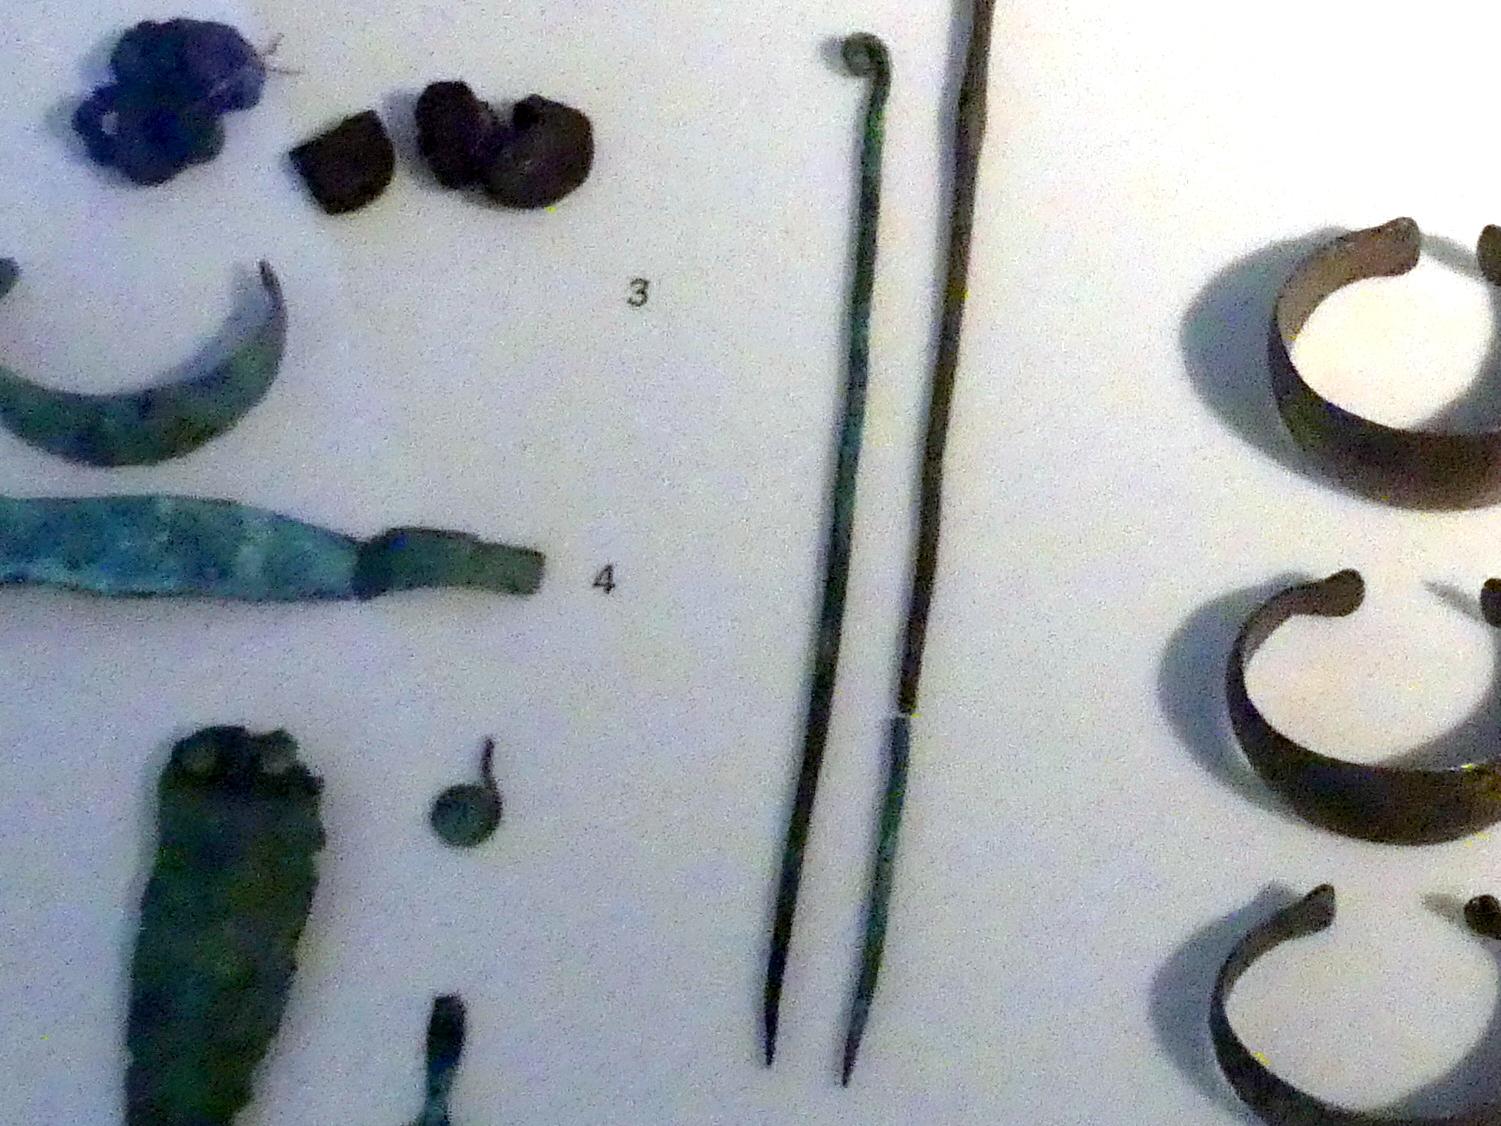 Rollenkopfnadel, Mittlere Bronzezeit, 3000 - 1300 v. Chr., 1600 - 1300 v. Chr., Bild 1/2